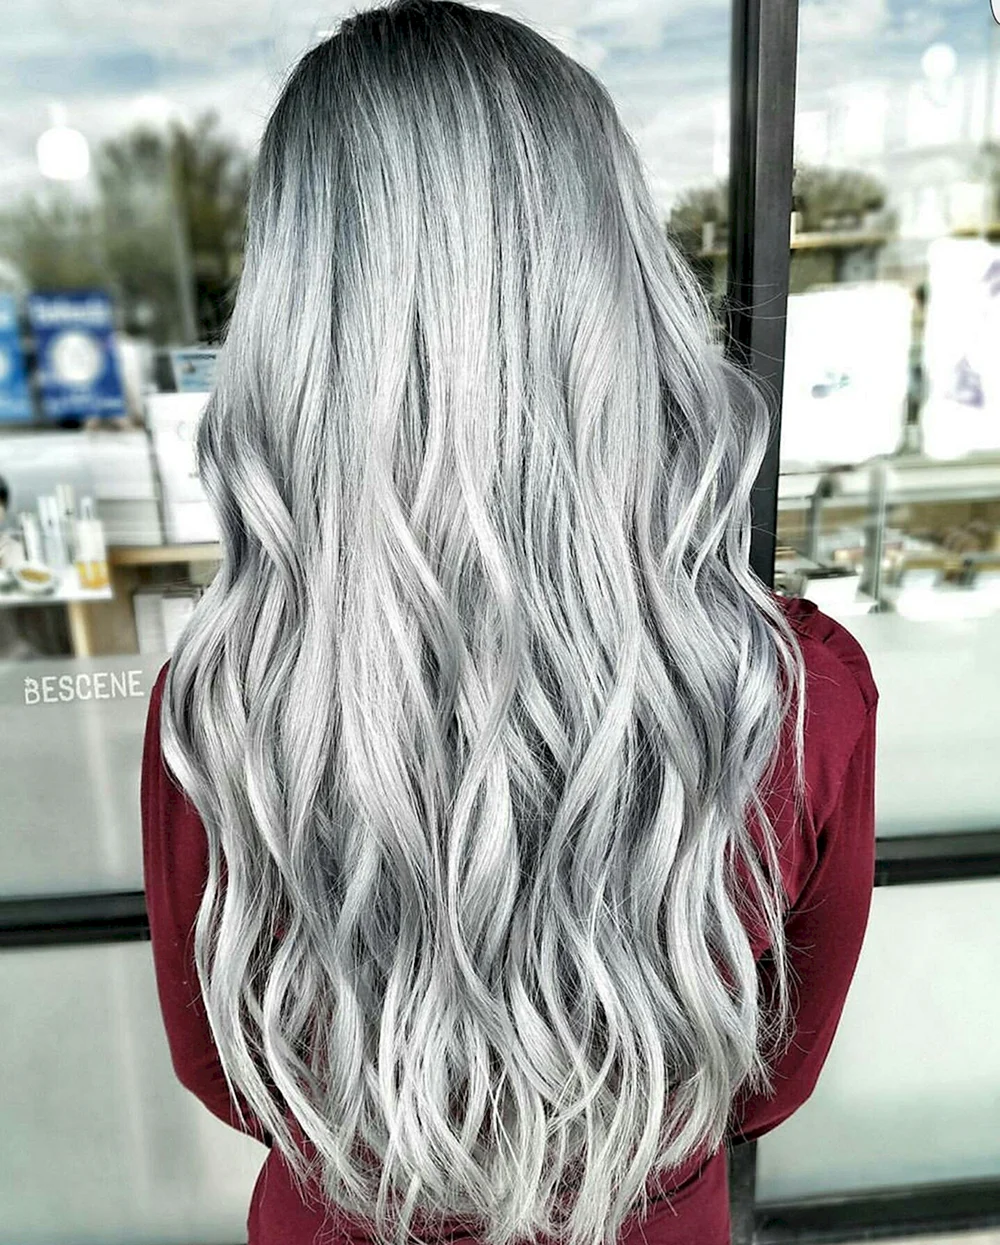 Silver hair